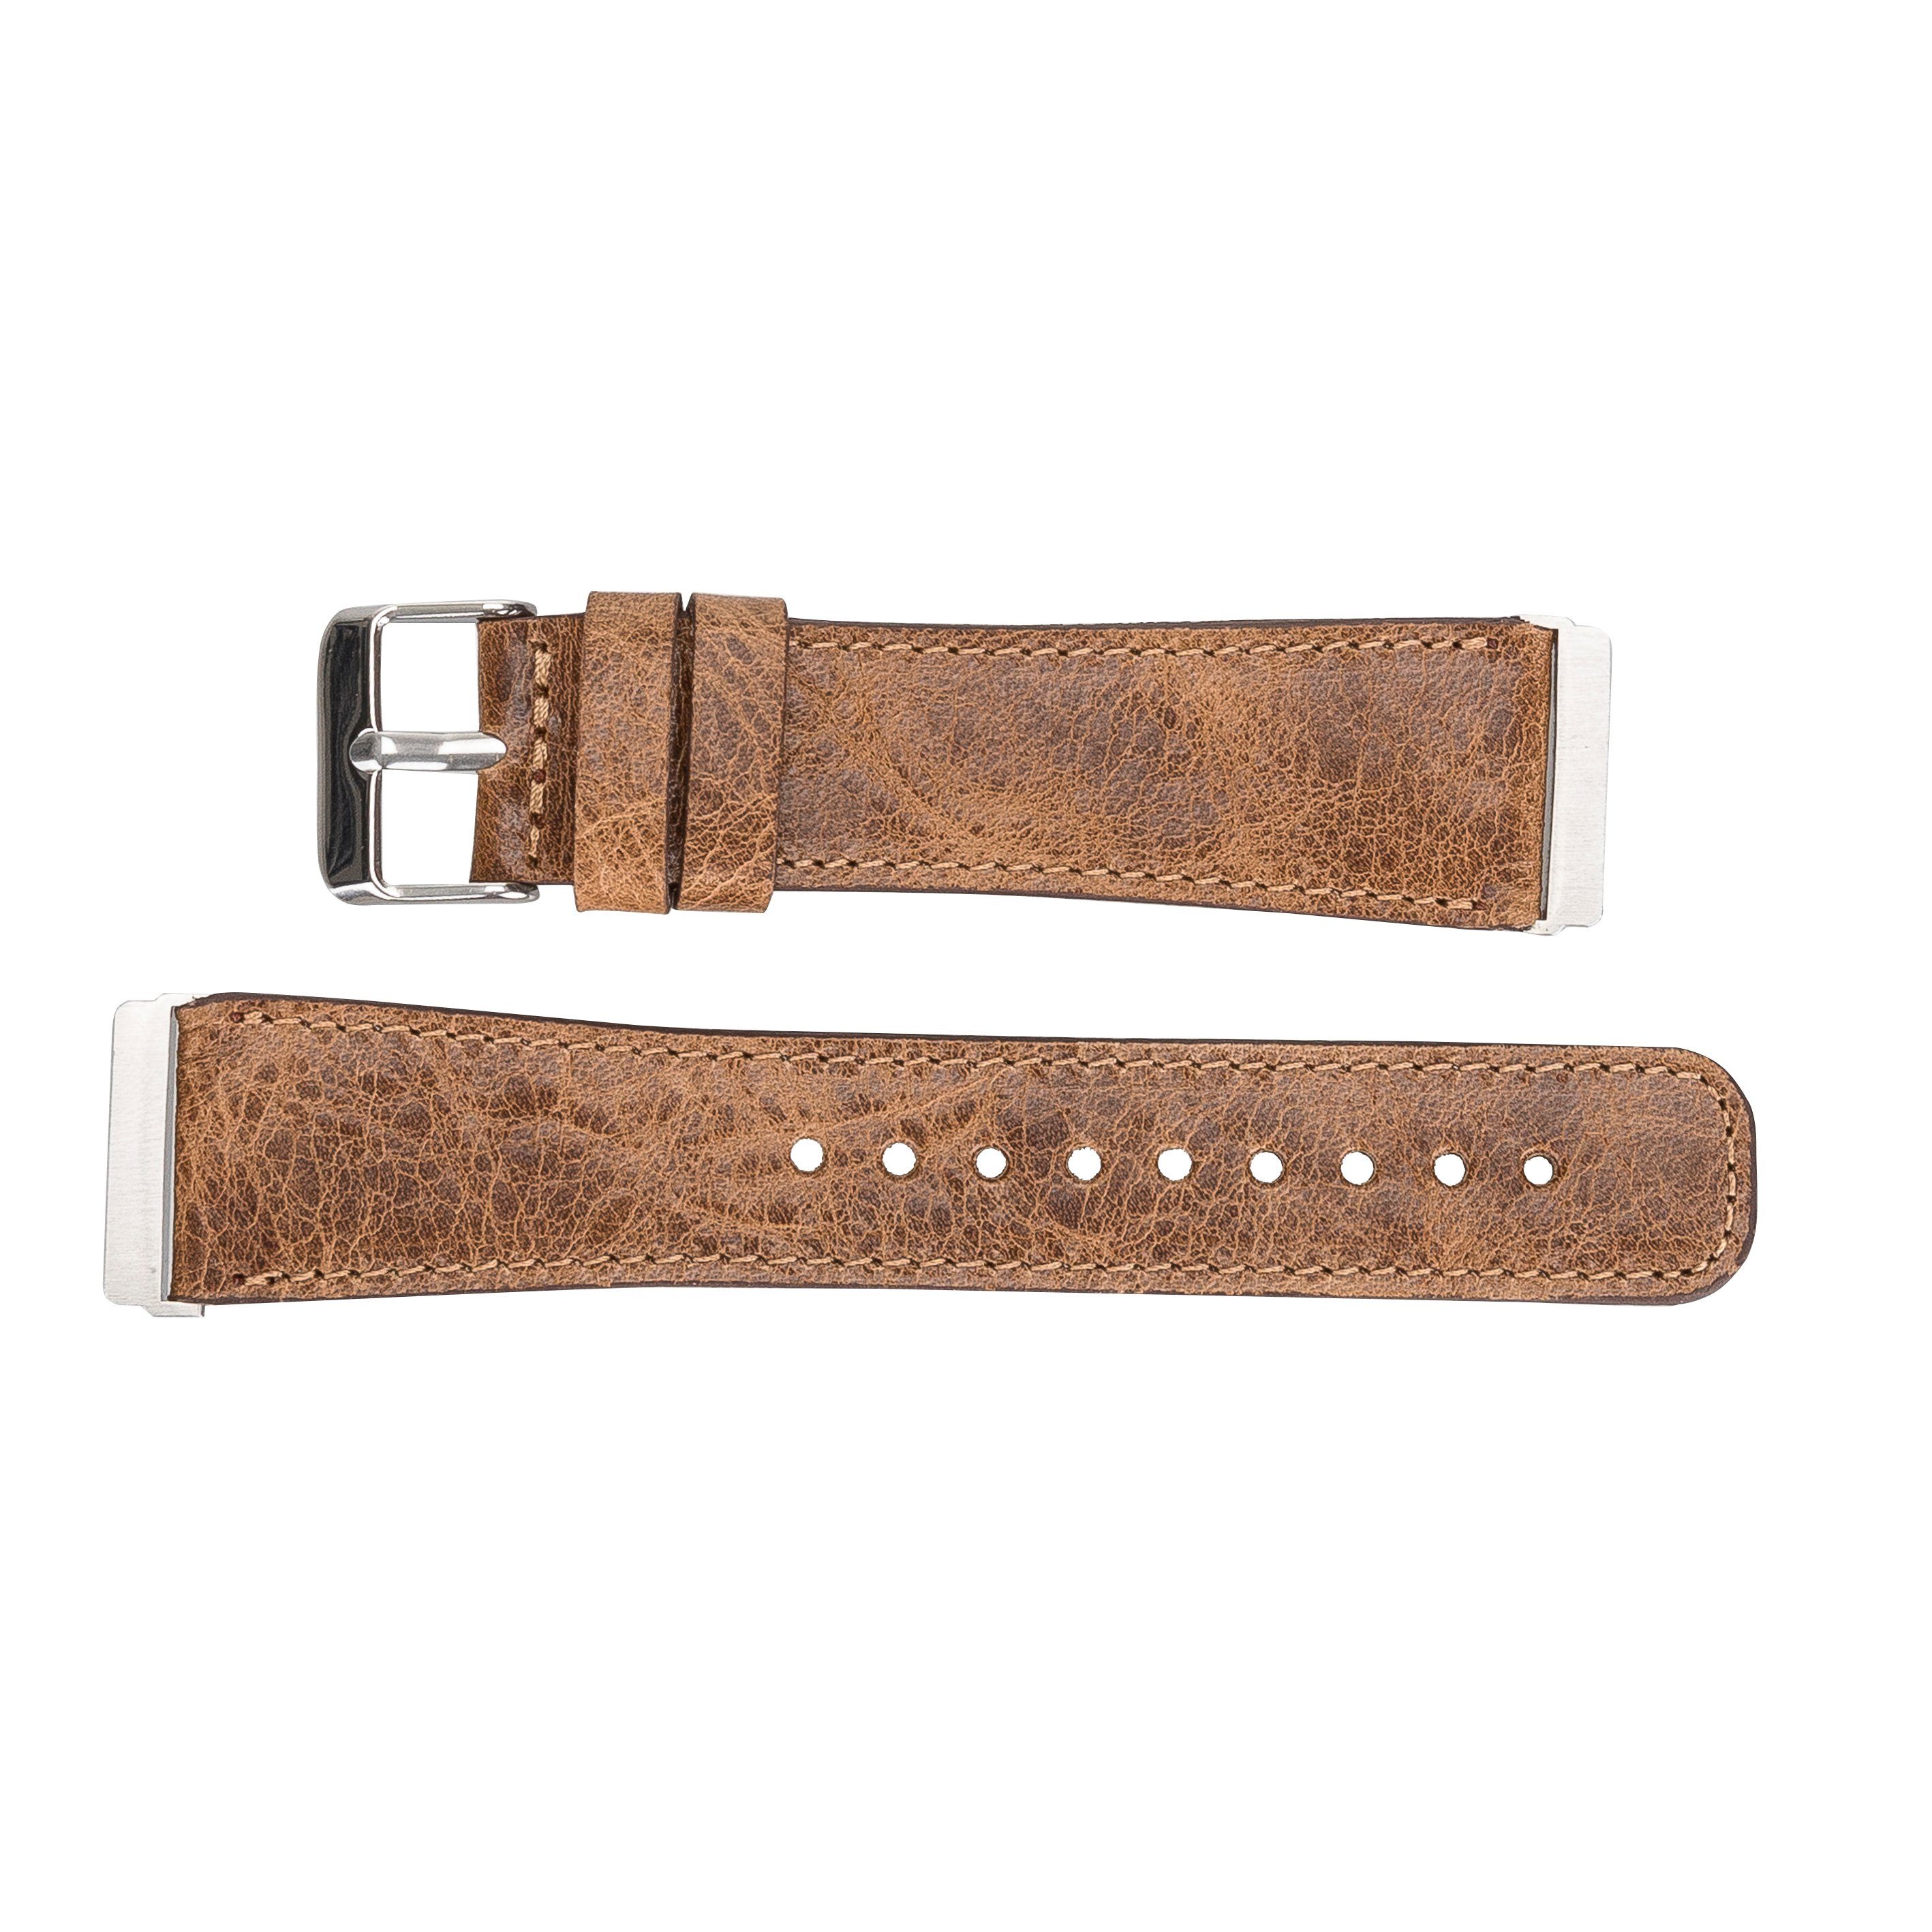 2 Fitbit Echtes Versa Leather VINTAGE Ersatzarmband 4 Smartwatch-Armband 3 & Sense / Leder Armband BRAUN Renna /